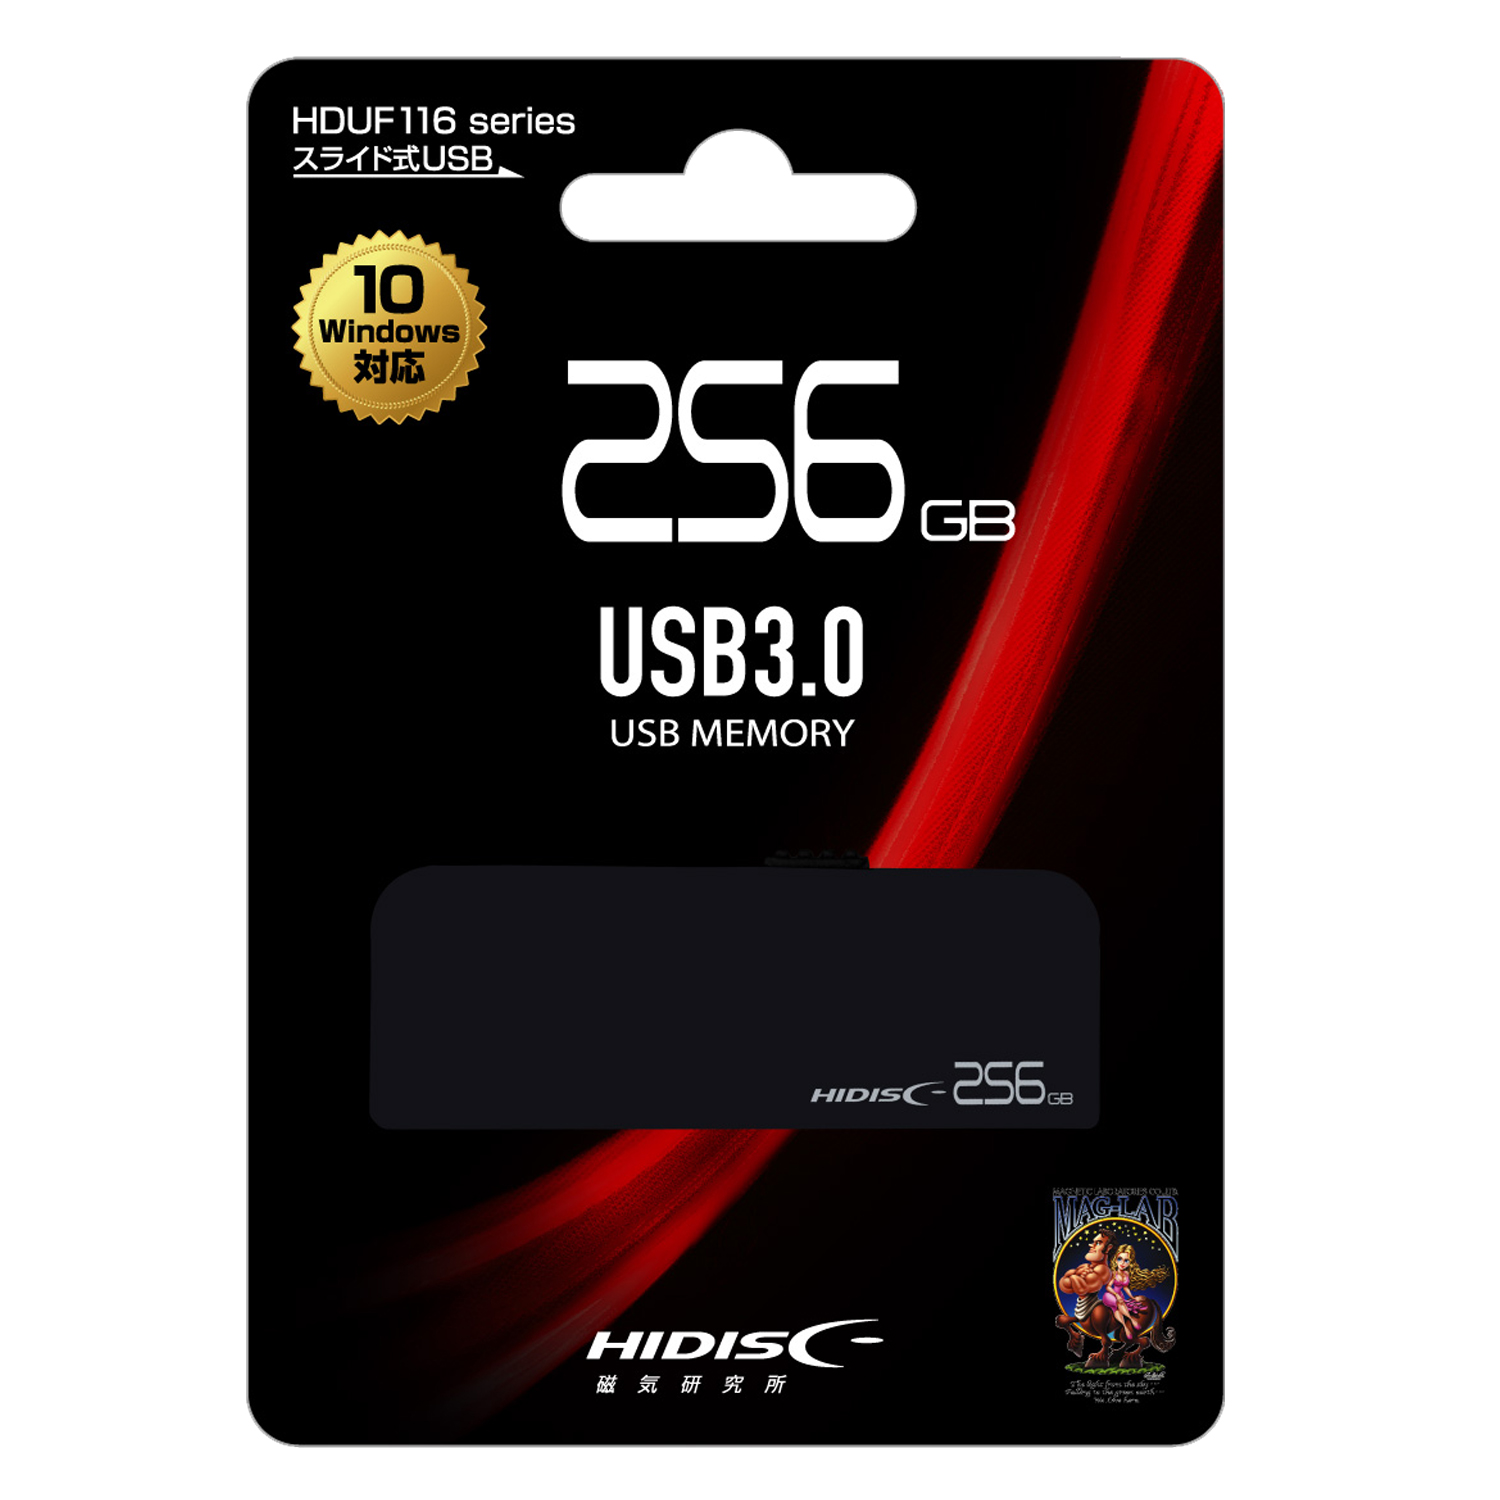 HIDISC USB 3.0 フラッシュドライブ 256GB スライド式 HDUF116S256G3